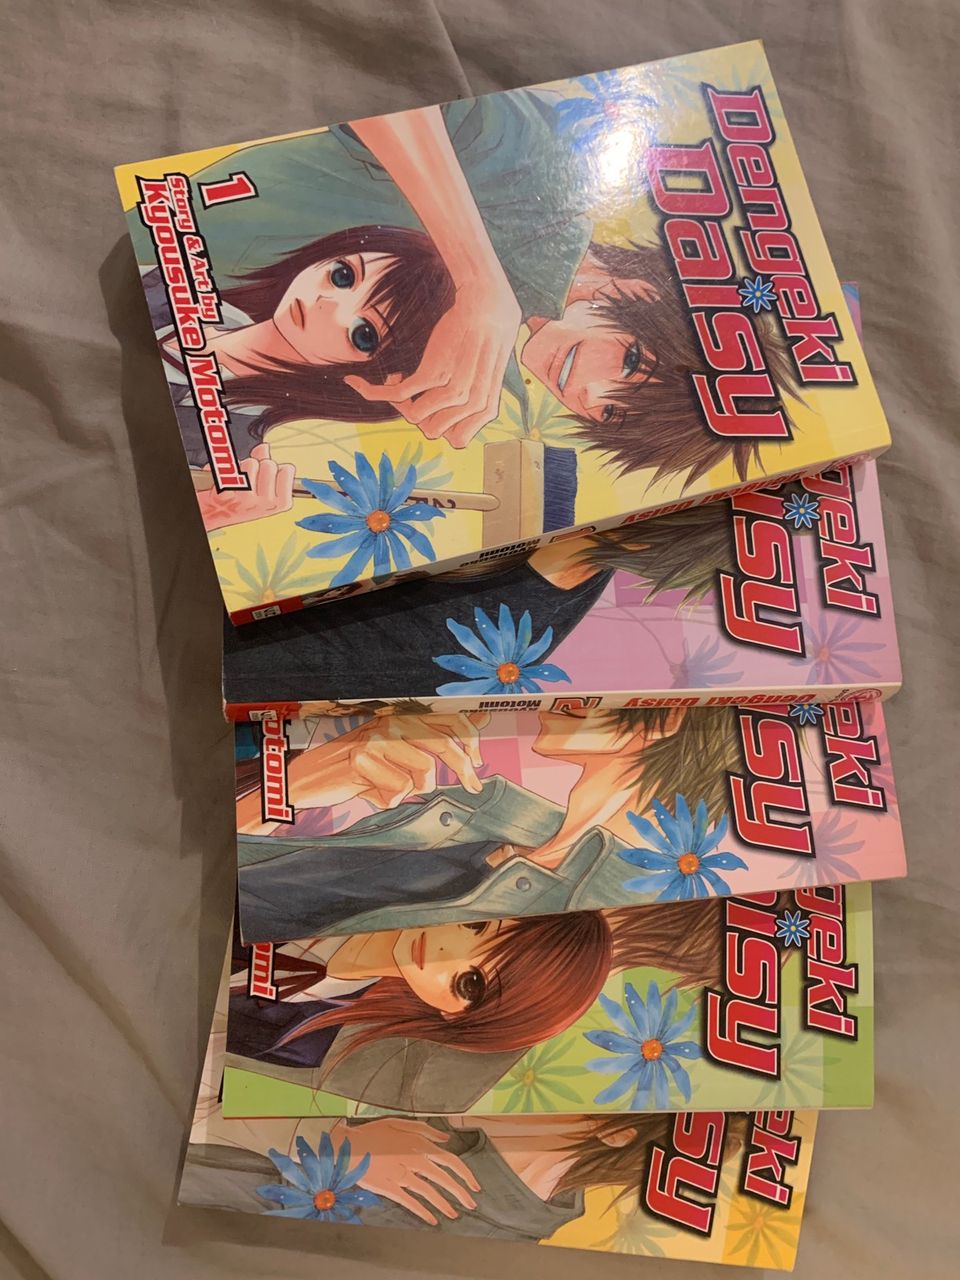 dengeki daisy vol. 1-5 manga